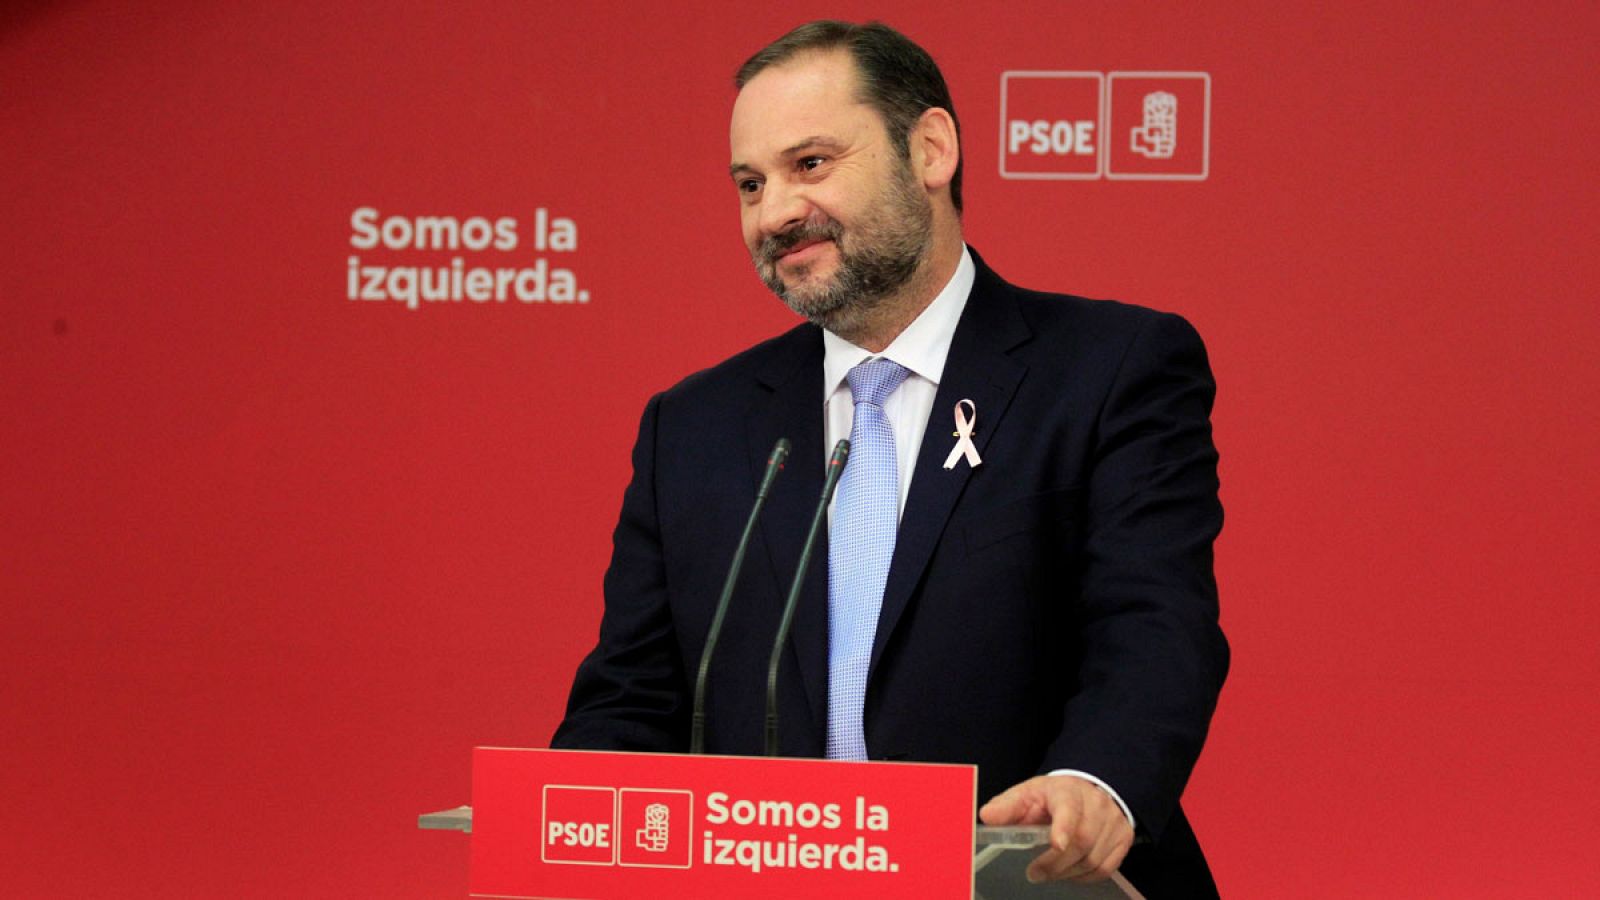 El secretario de Organización del PSOE, José Luis Ábalos, durante una rueda de prensa en la sede de Ferraz el pasado 19 de octubre de 2017.